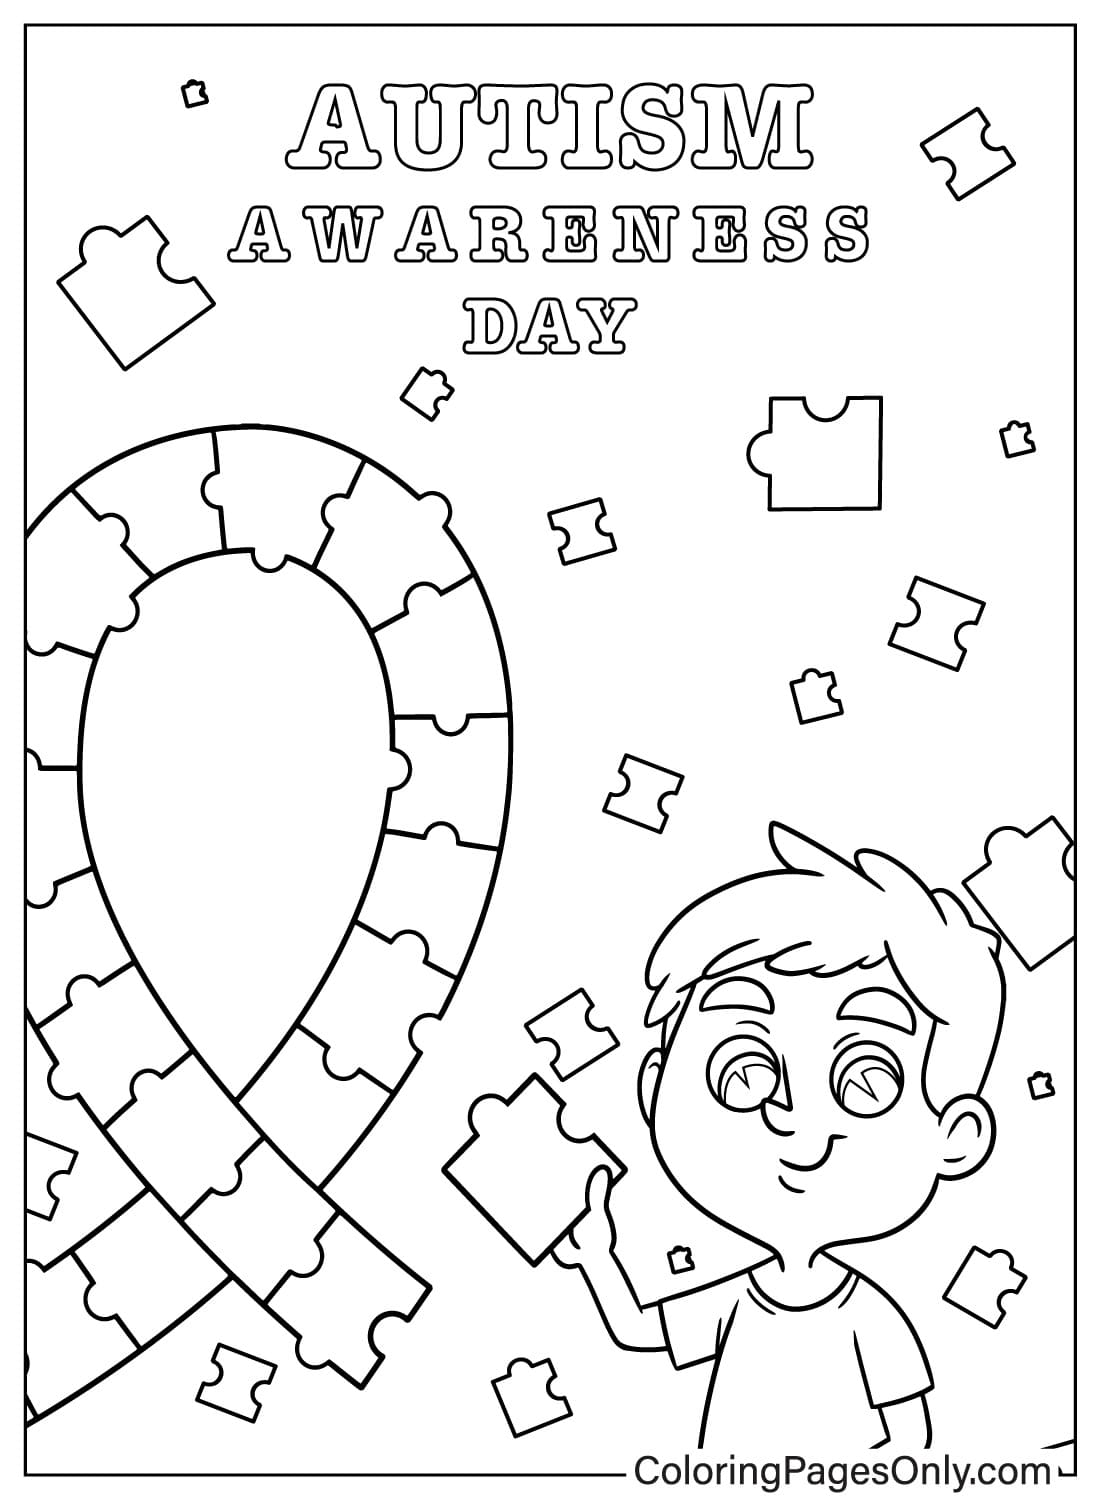 世界自闭症意识日为学龄前儿童提供的自闭症意识彩页